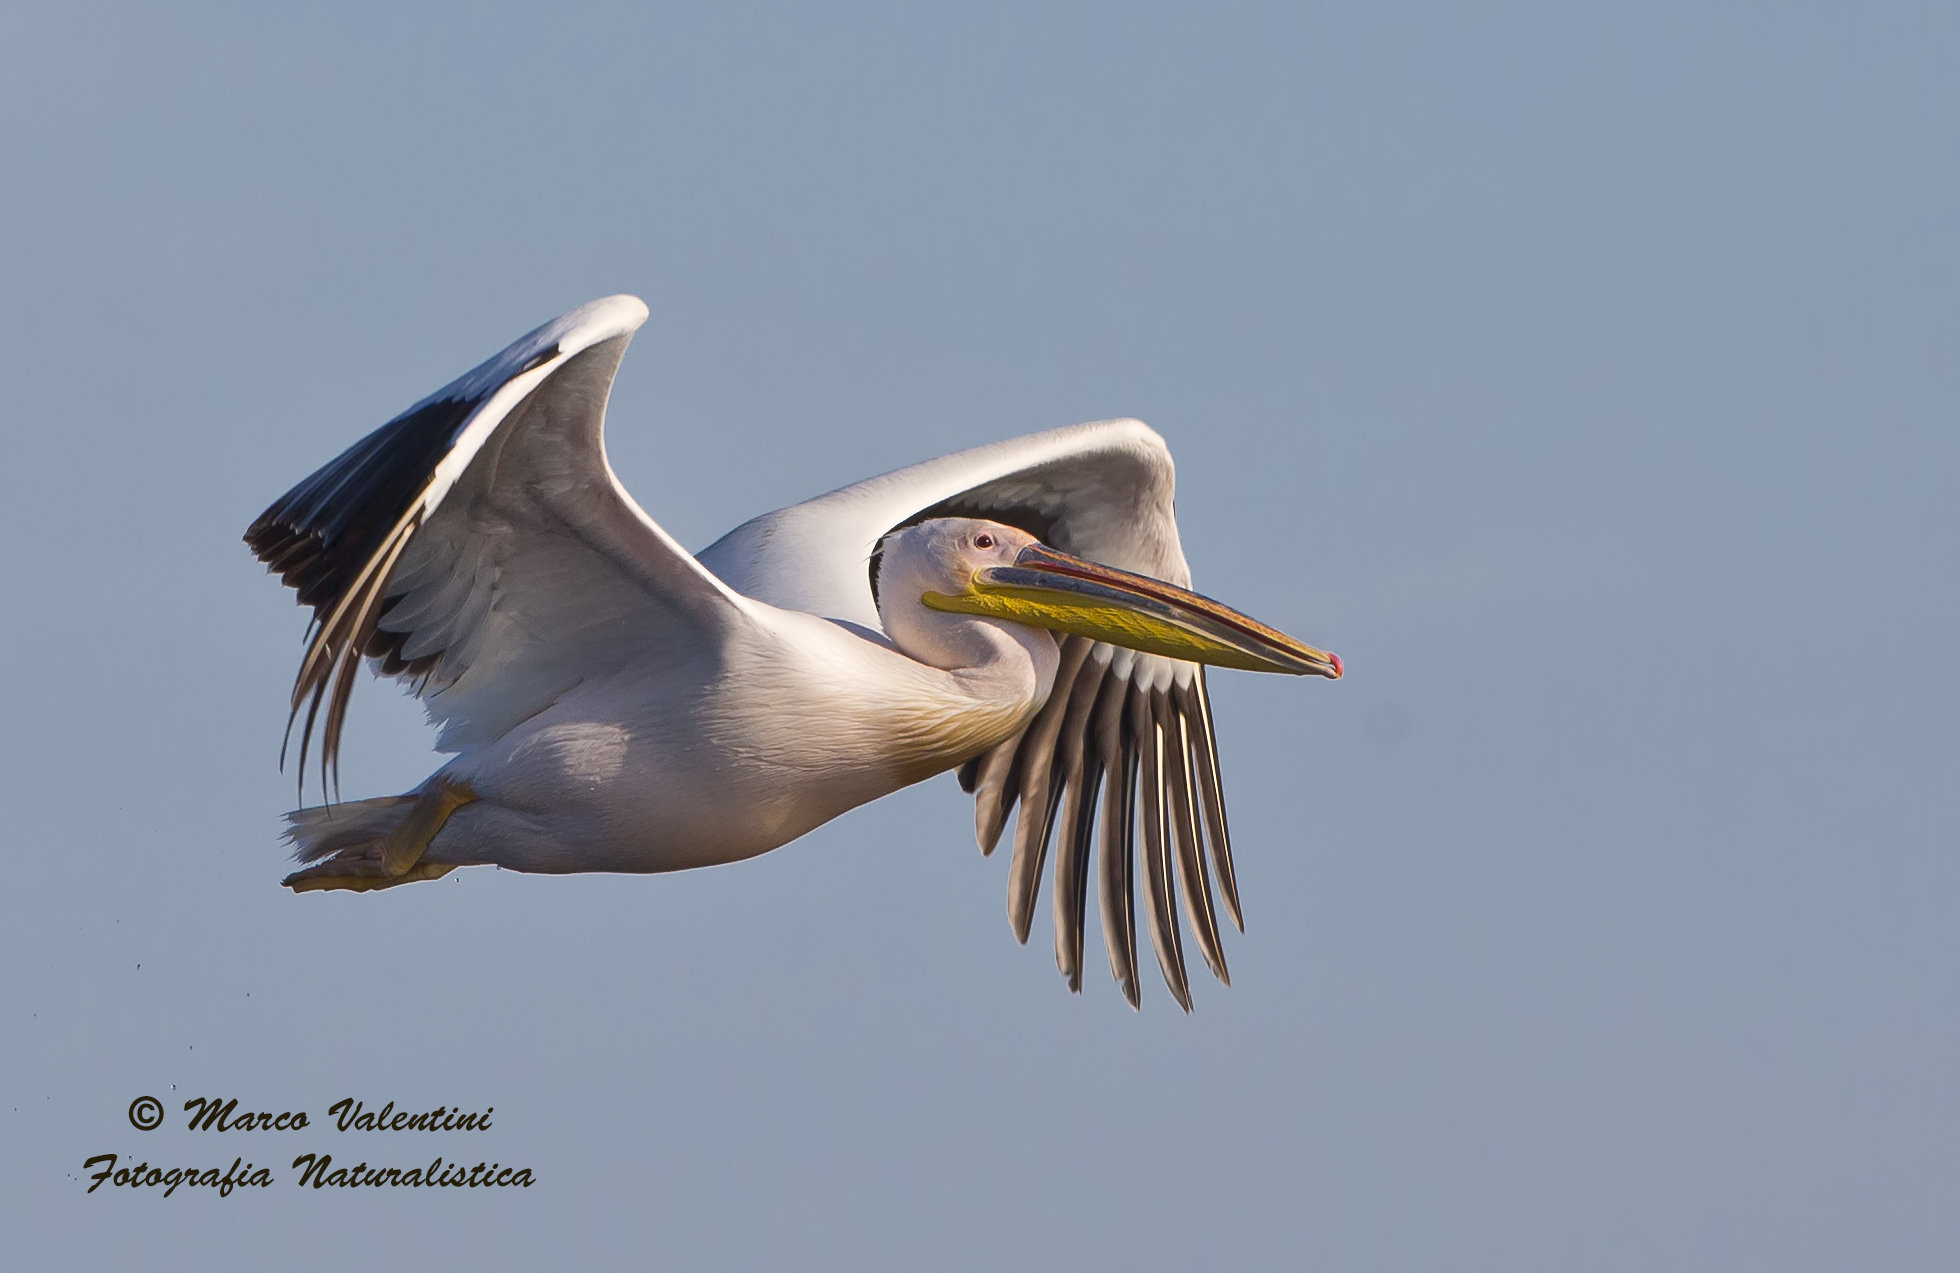 Flight of the pelican...